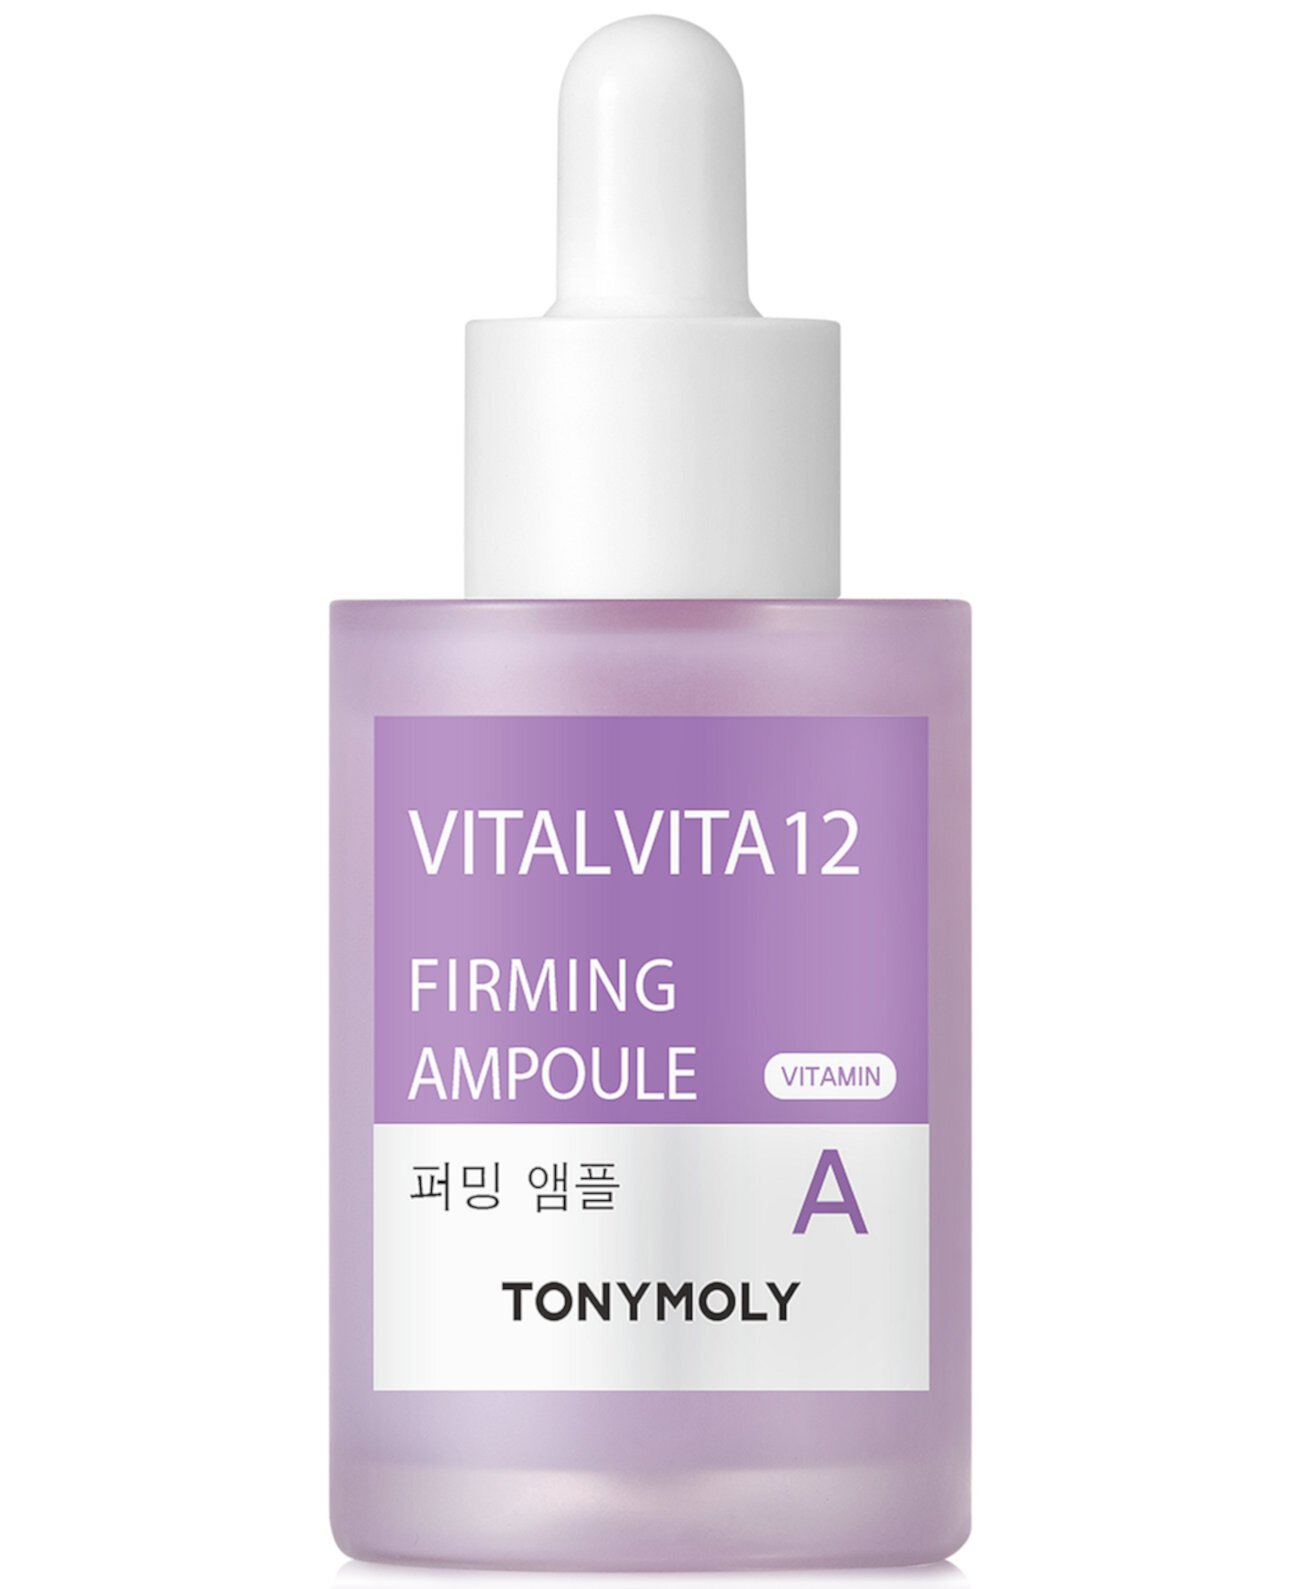 Vital Vita 12 Укрепляющая ампула с витамином А, 1 унция. TONYMOLY